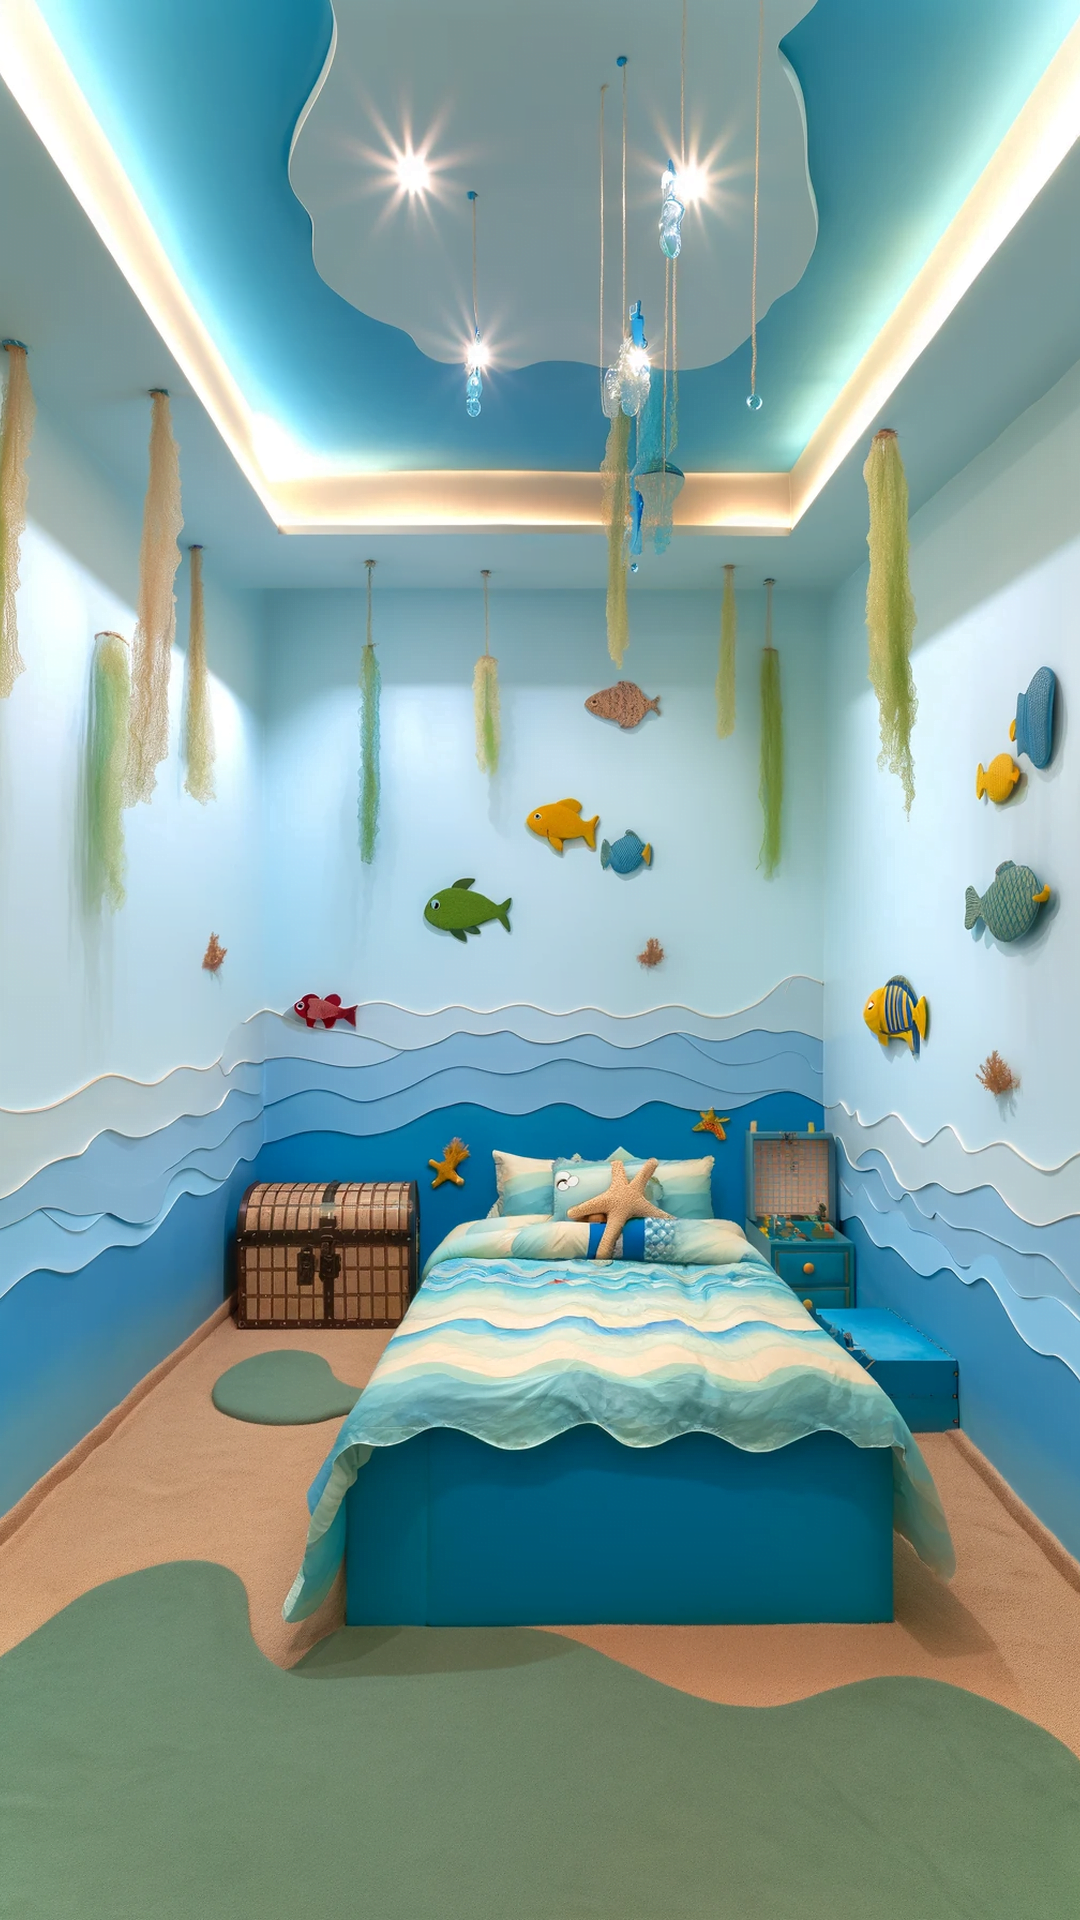 Sparkle Sanctuary: Whimsical Girly Room Ideas